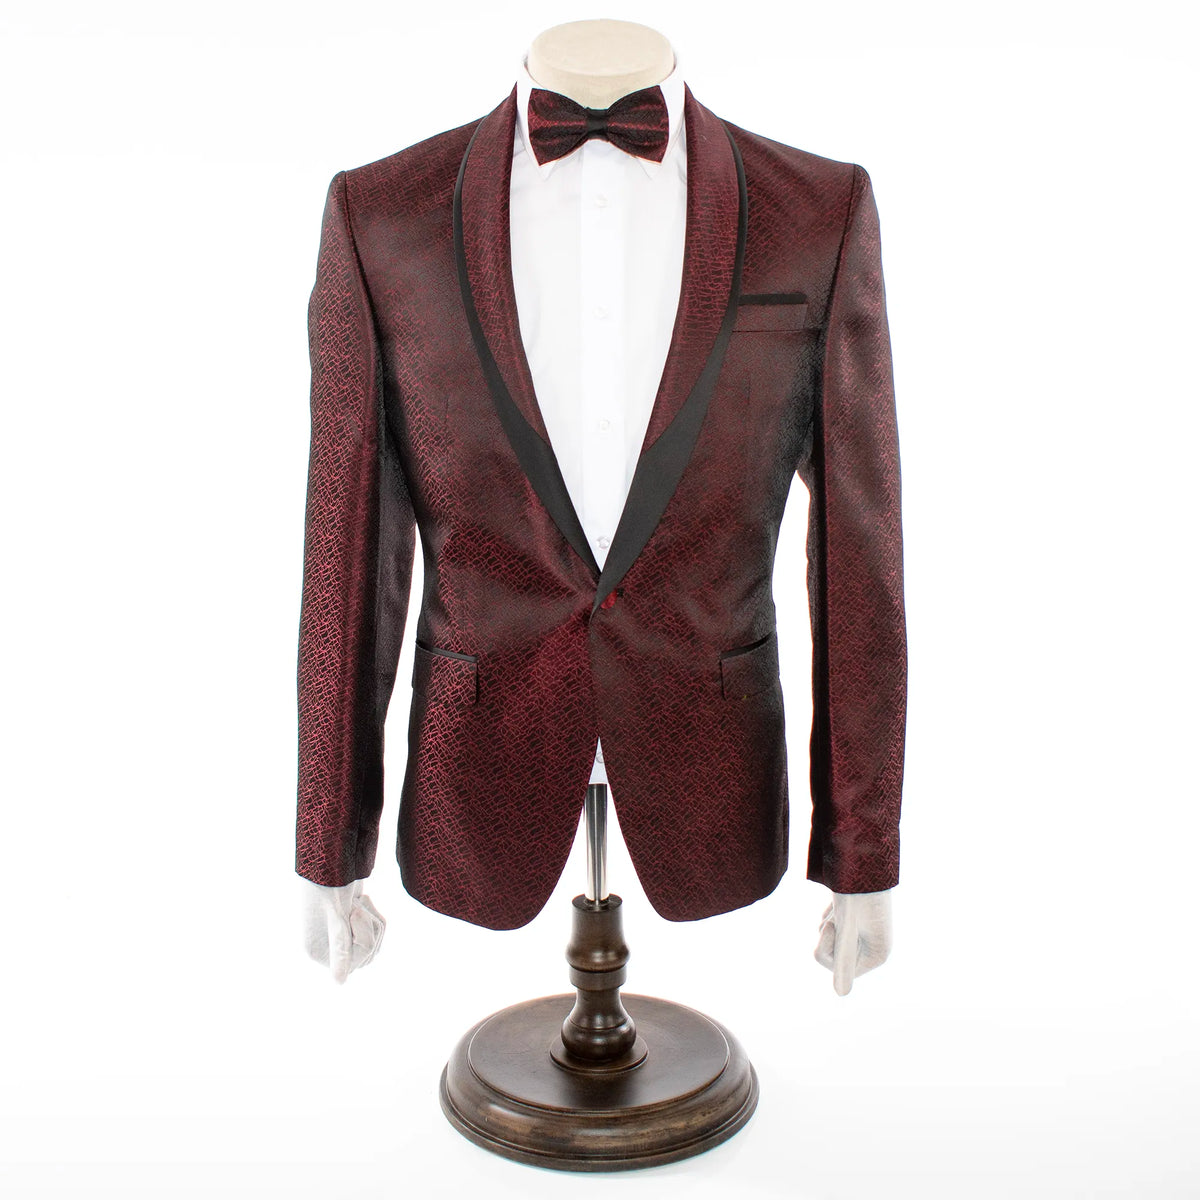 A Shawl lapel jacquard patterned burgundy tuxedo suit by dejiandkola - -  Afrikrea